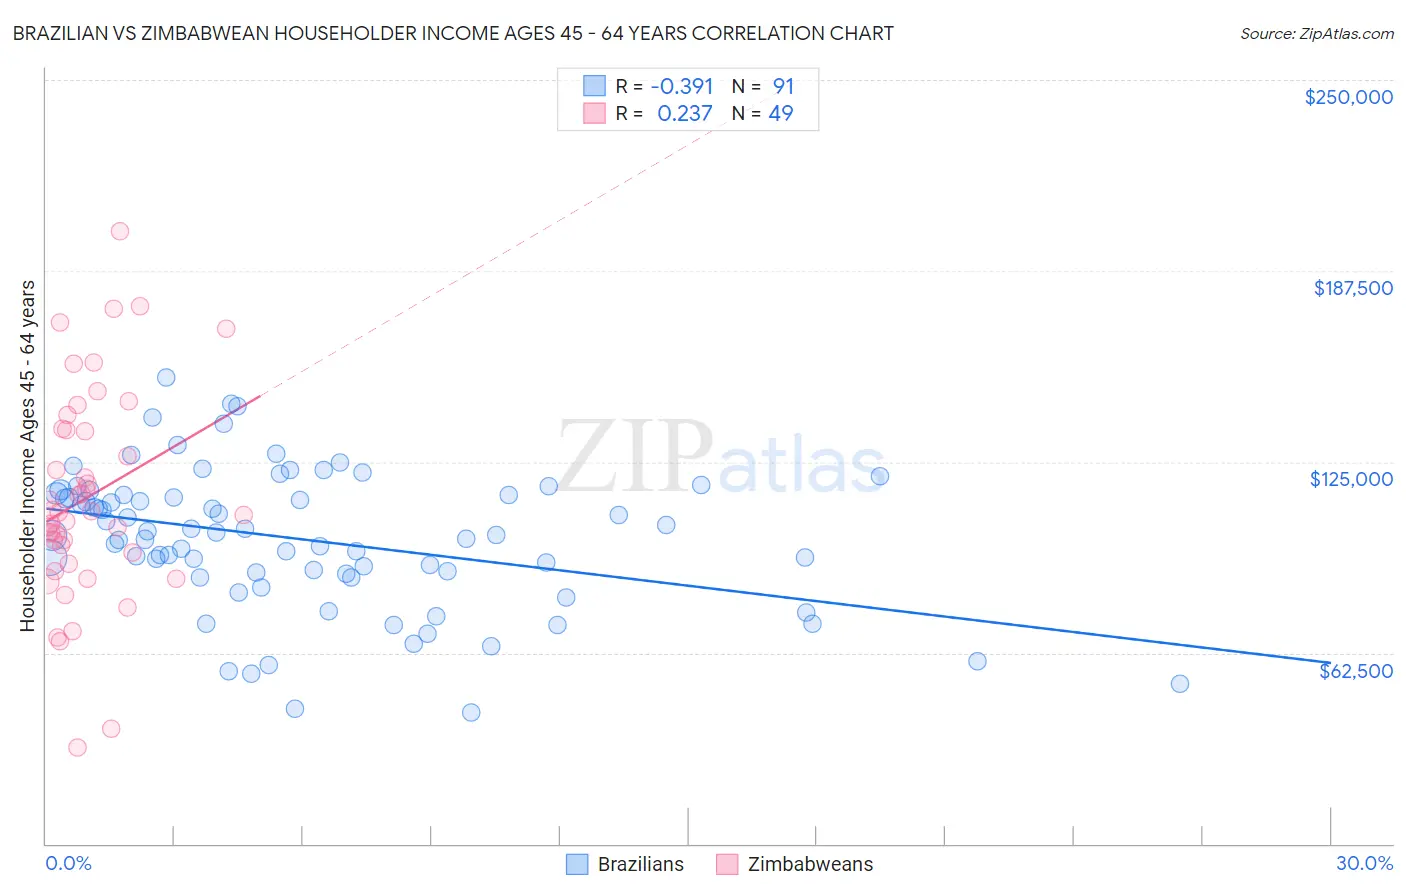 Brazilian vs Zimbabwean Householder Income Ages 45 - 64 years